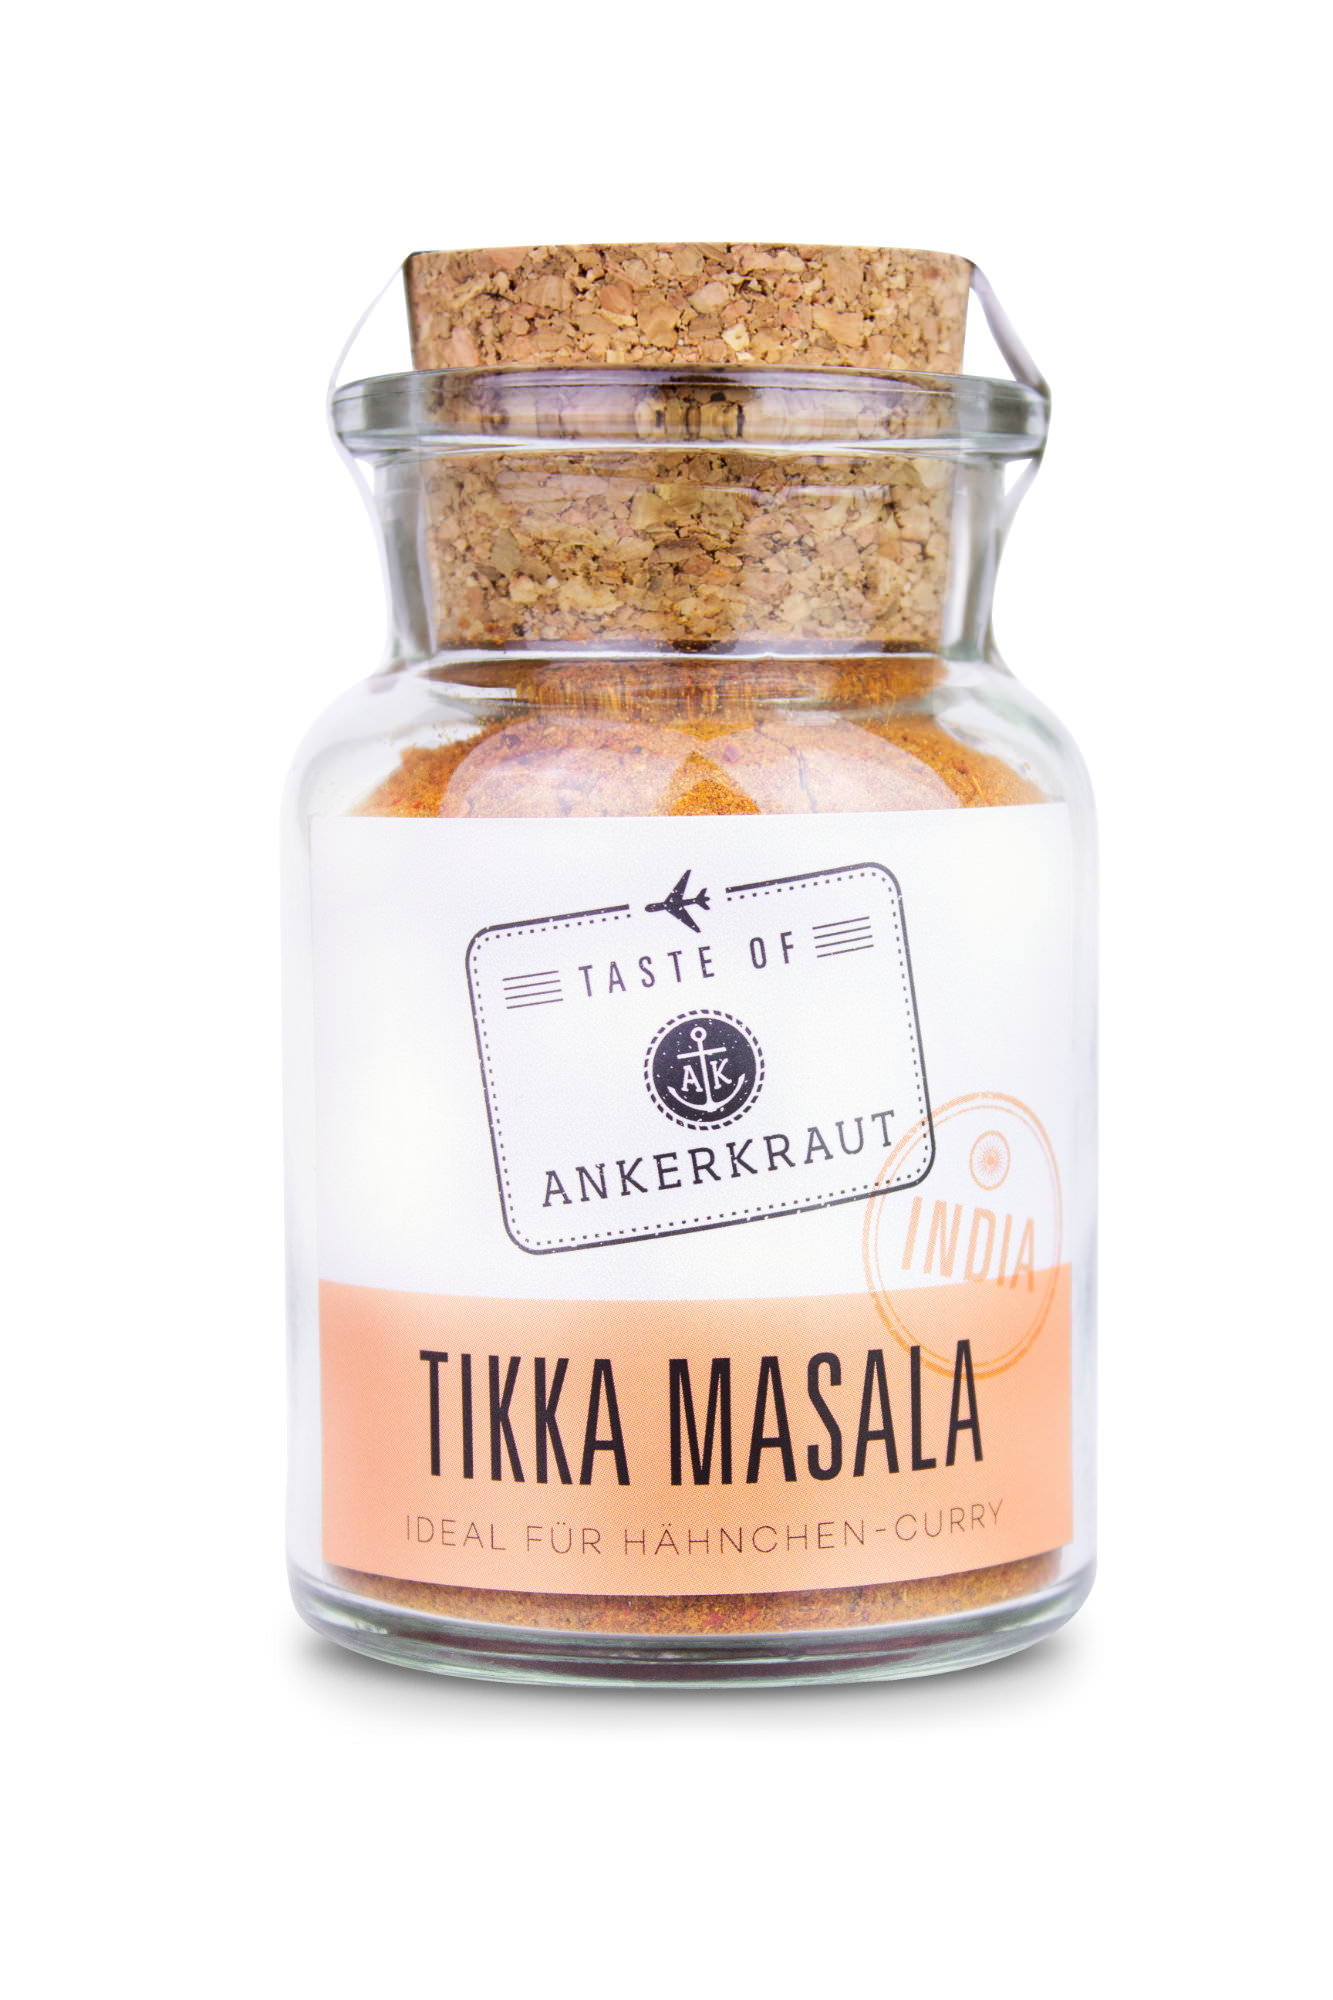 India - Tikka Masala, in a cork jar